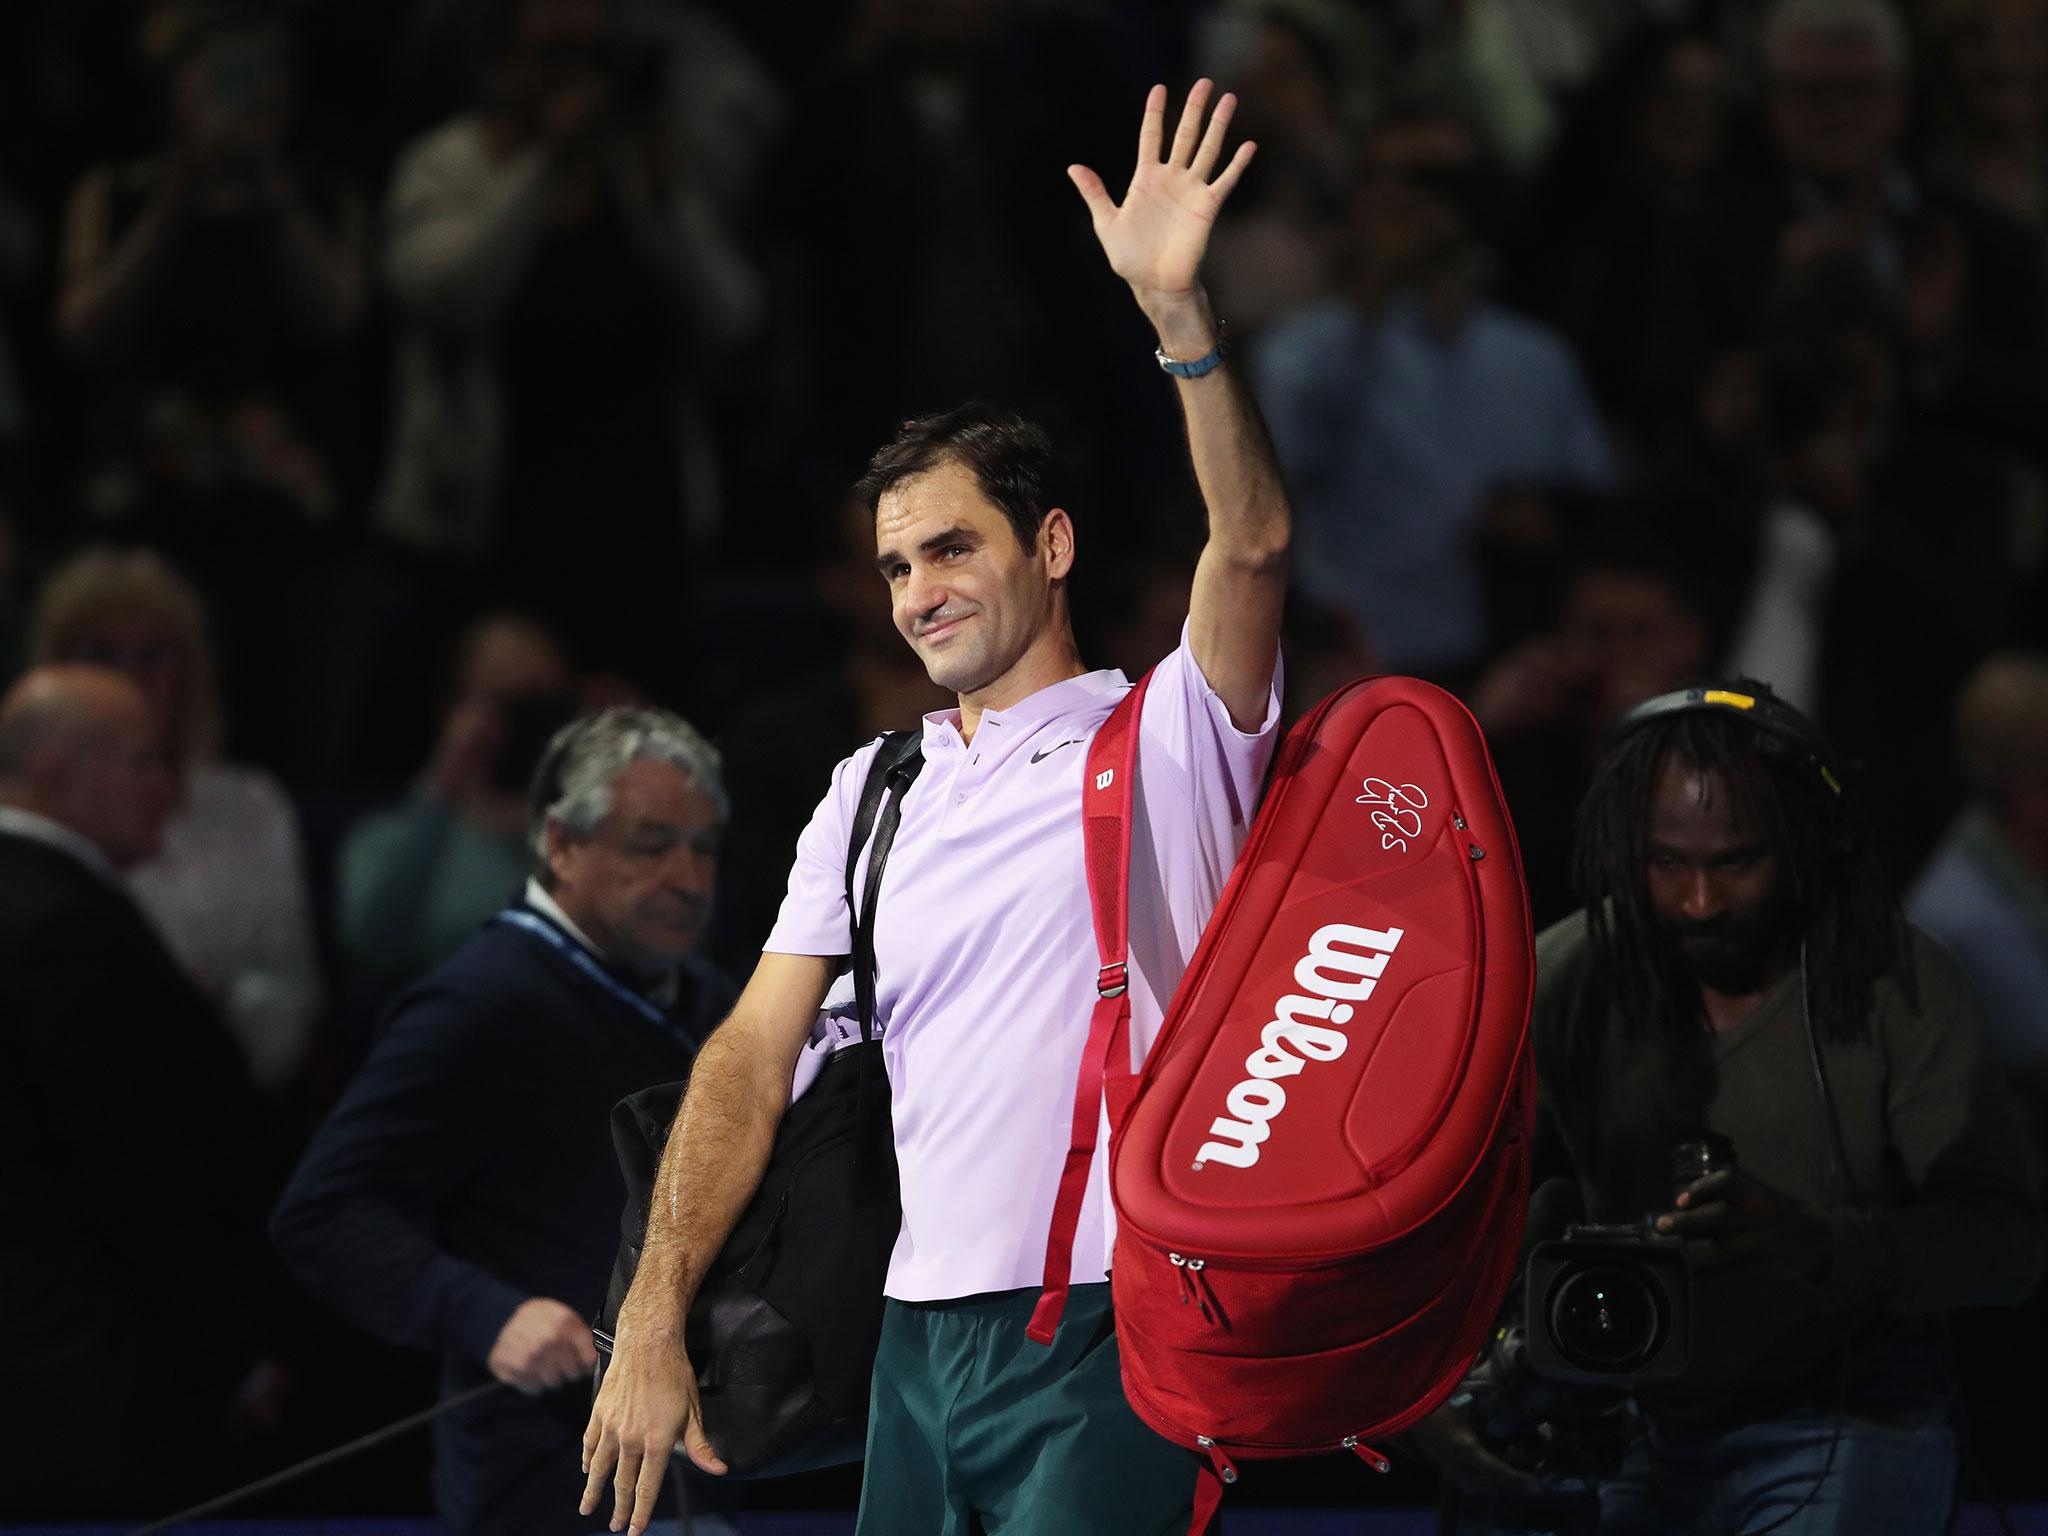 Roger Federer dug deep to run out a 6-7 (5/7) 6-4 6-1 winner